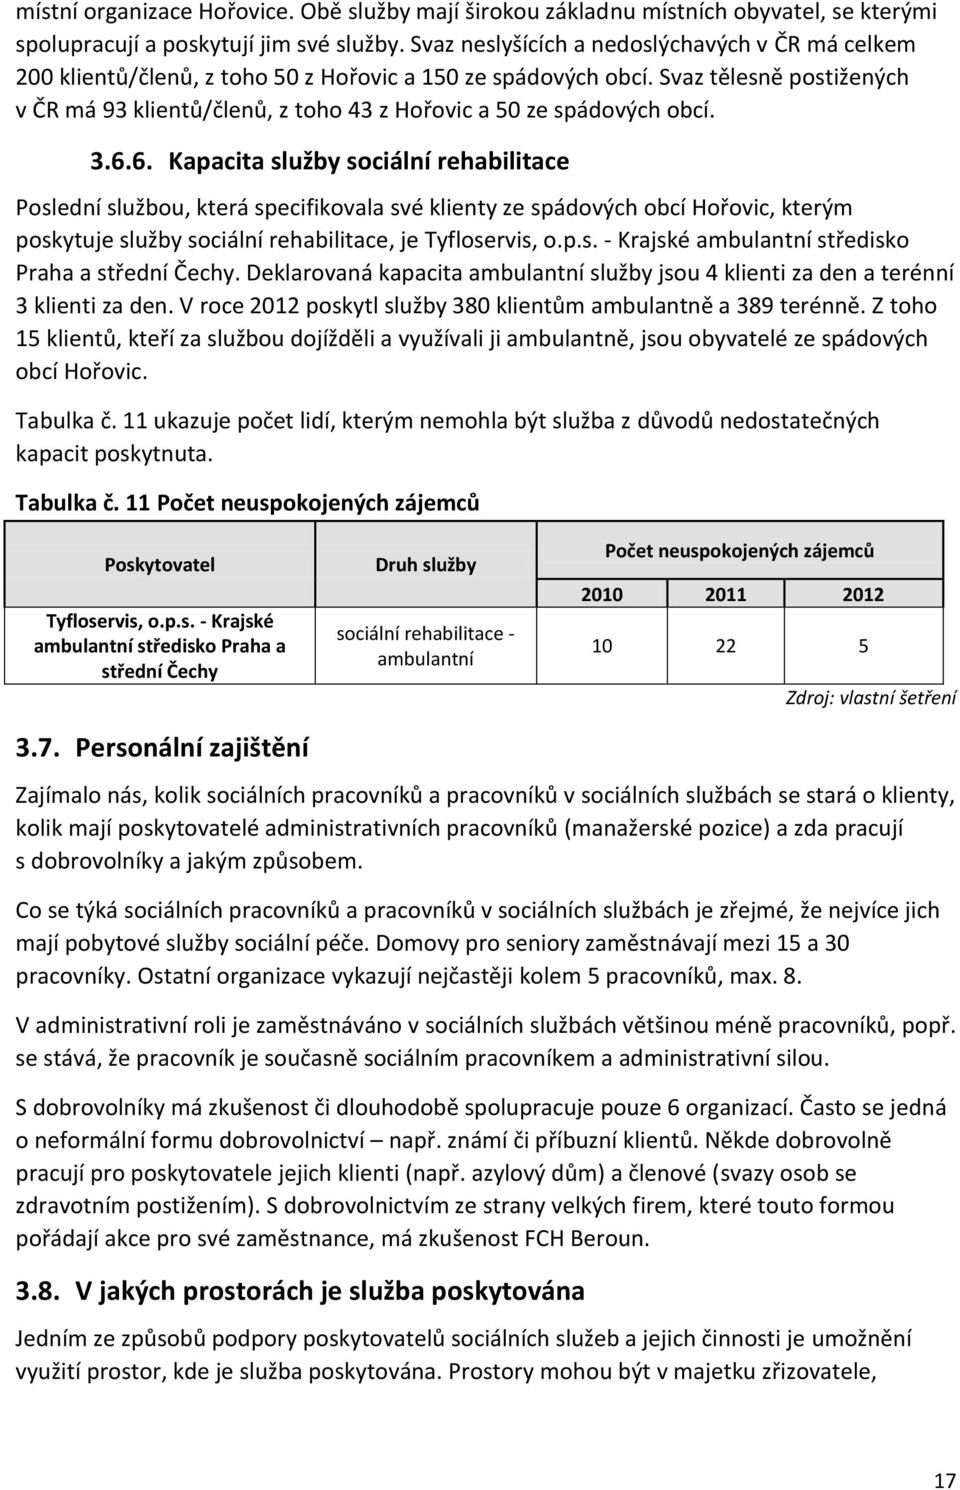 Svaz tělesně postižených v ČR má 93 klientů/členů, z toho 43 z Hořovic a 50 ze spádových obcí. 3.6.